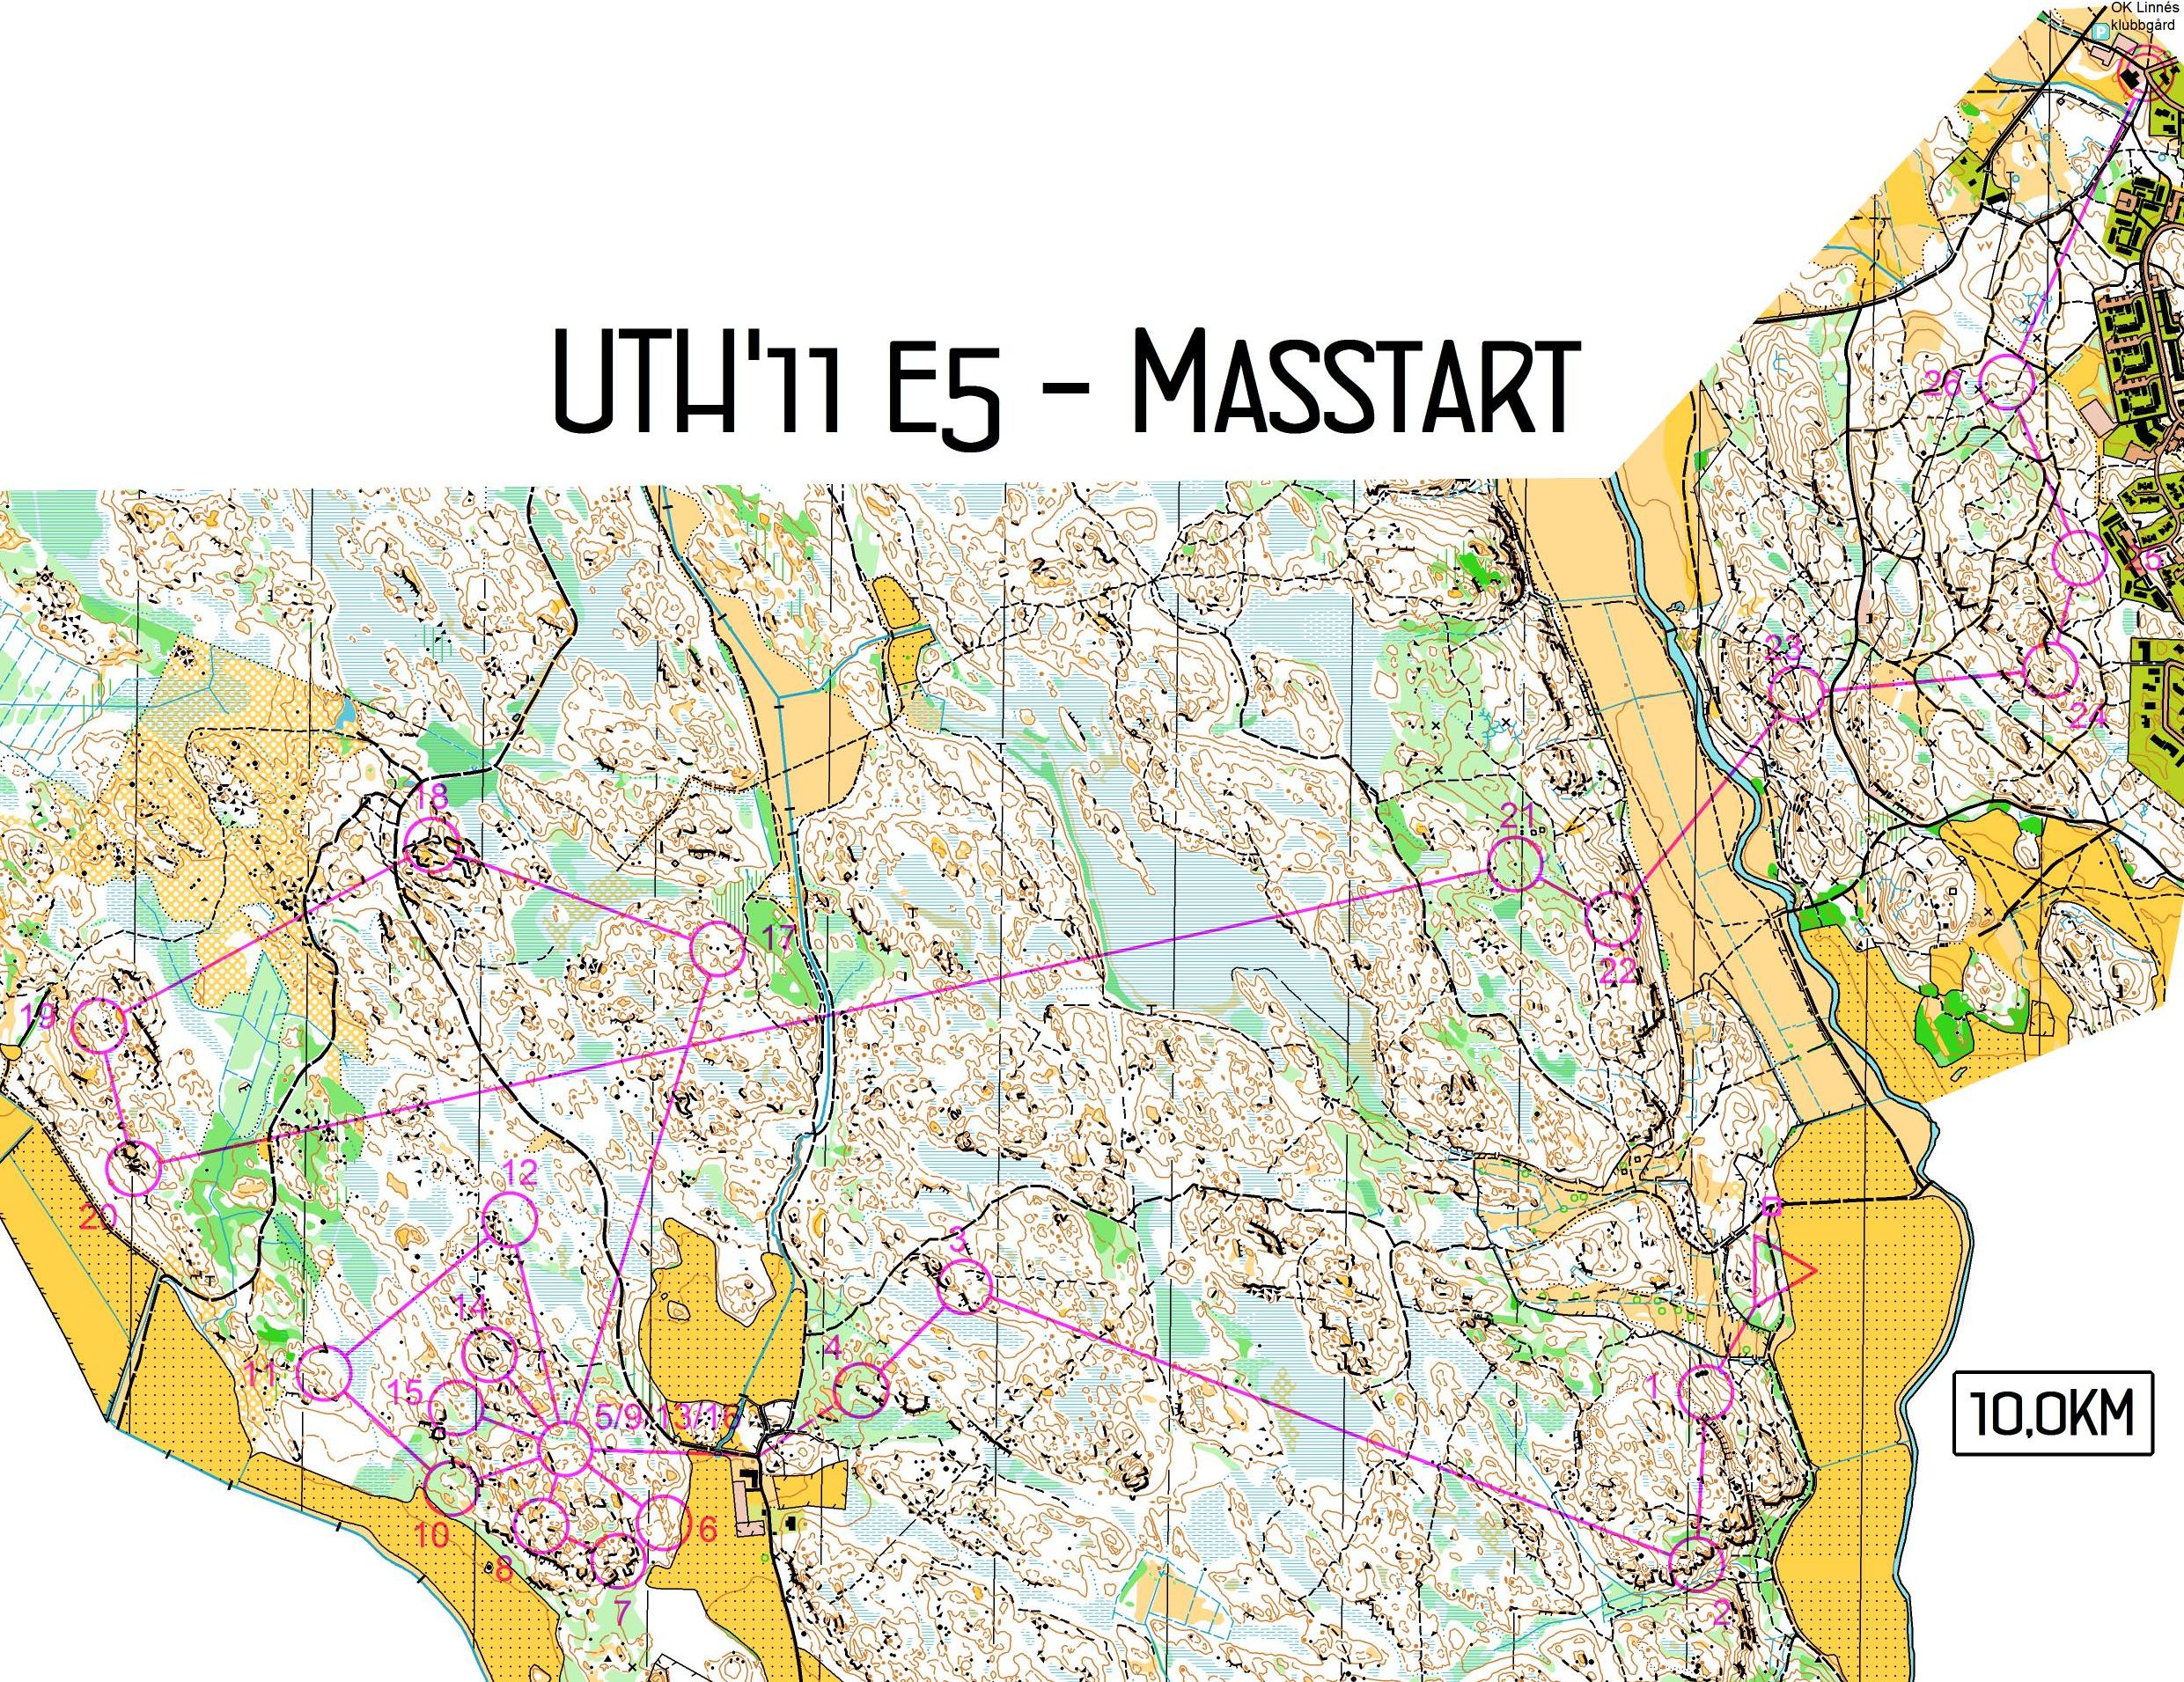 UTH, Masstart, E5 (11/12/2011)